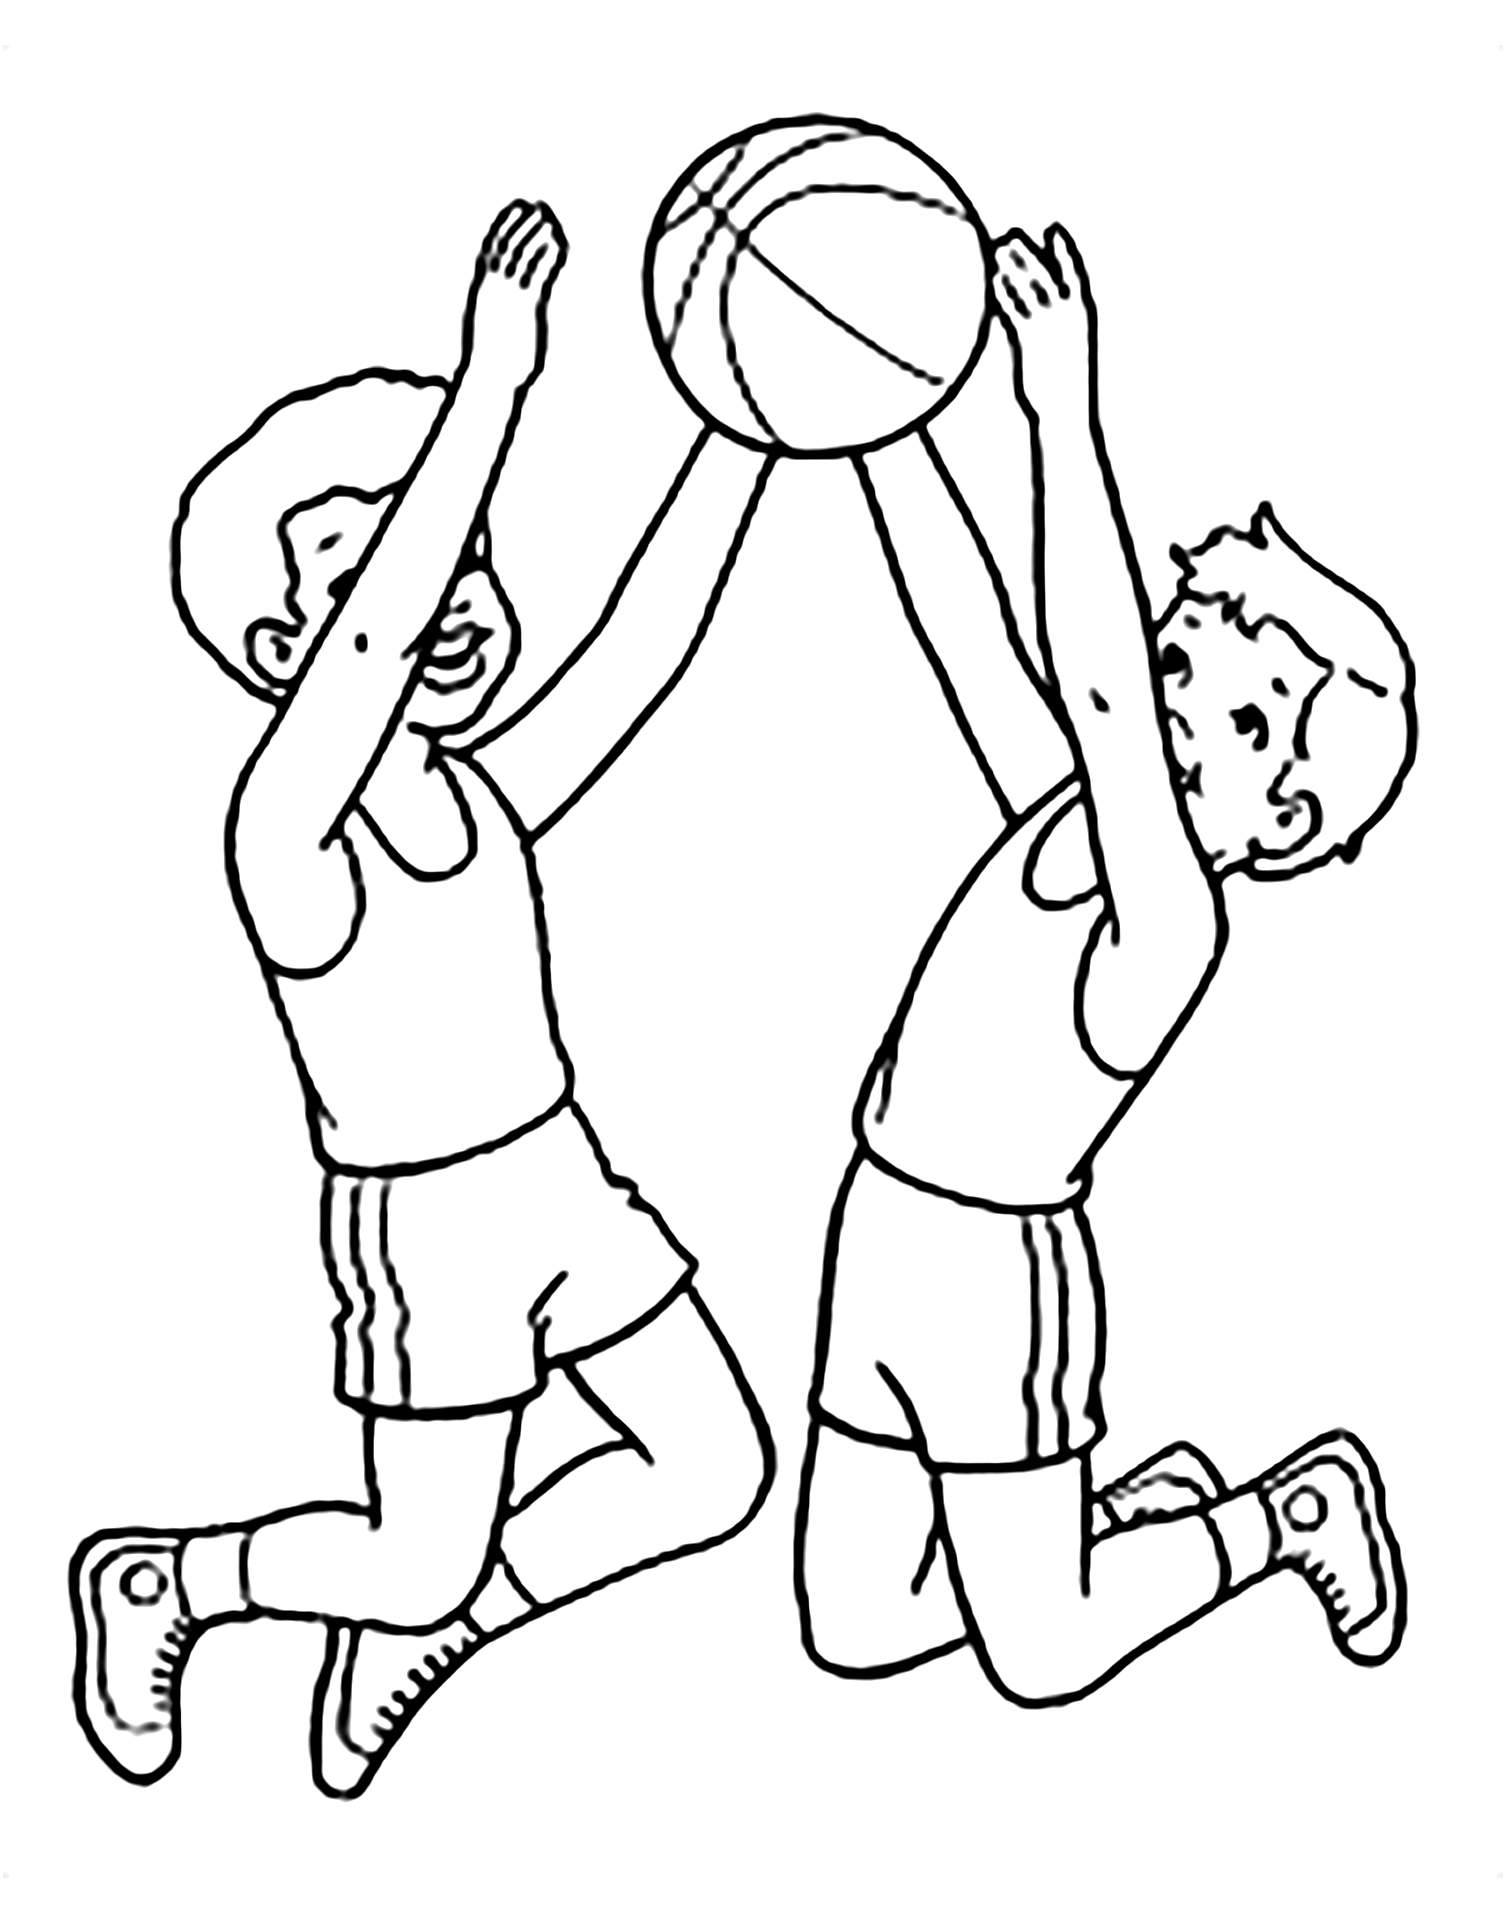 Dibujo de Baloncesto gratis para descargar y colorear - Baloncesto  (Basketball) - Just Color Niños : Dibujos para colorear para niños